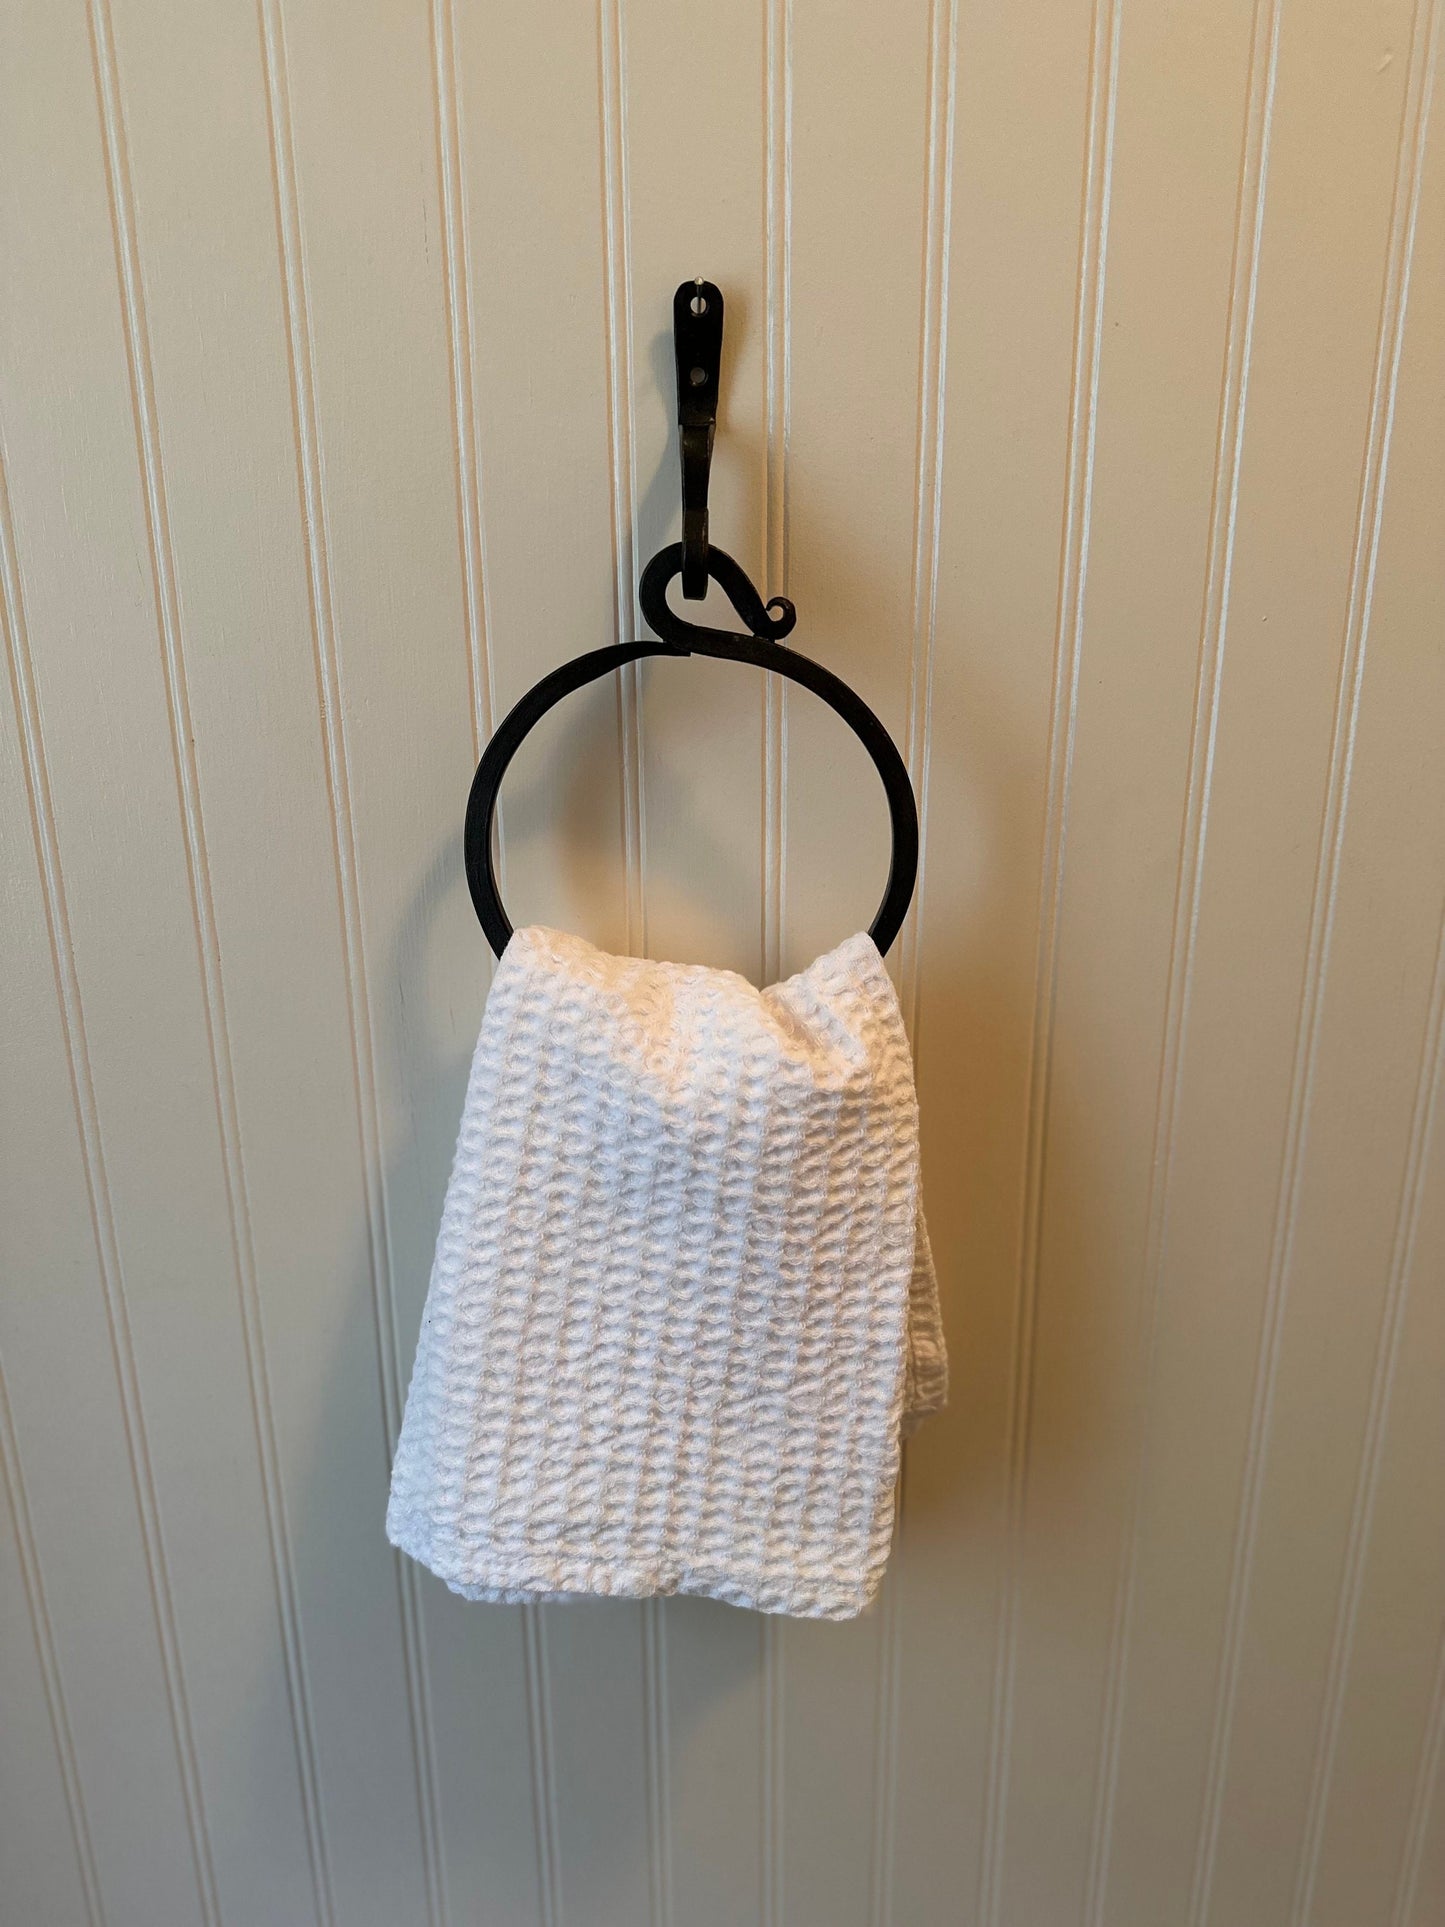 FORGED Metal Towel Ring/Towel Rack/Bathroom Decor/Metal Towel Ring/PICK COLOR/Farmhouse Bathroom/Towel Hook/Kitchen Towel Holder